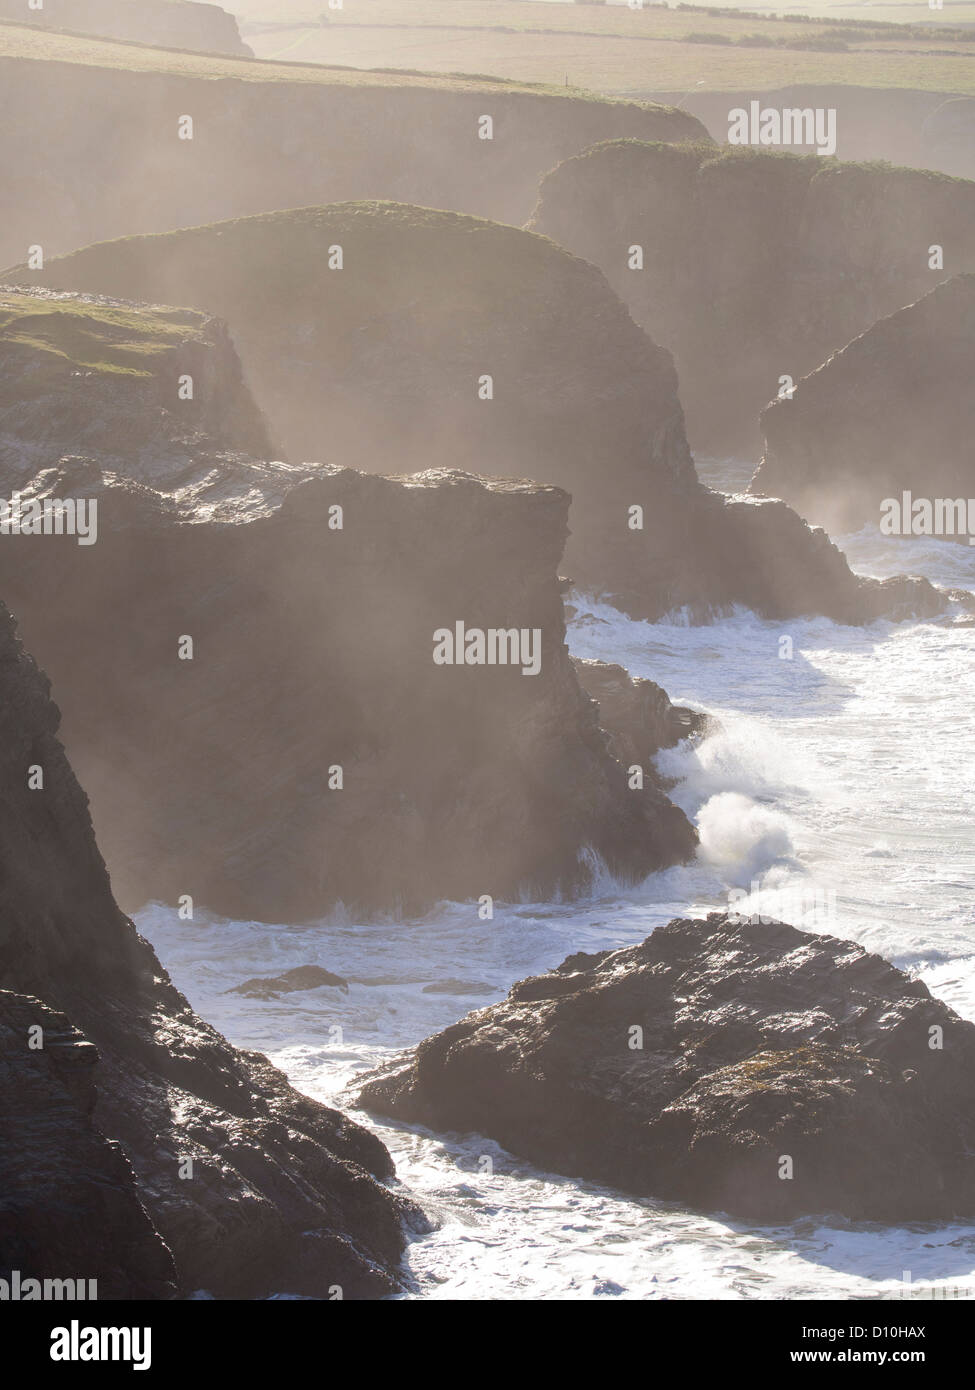 Salt spray and crashing waves near Porthcothan, Cornwall, UK. Stock Photo